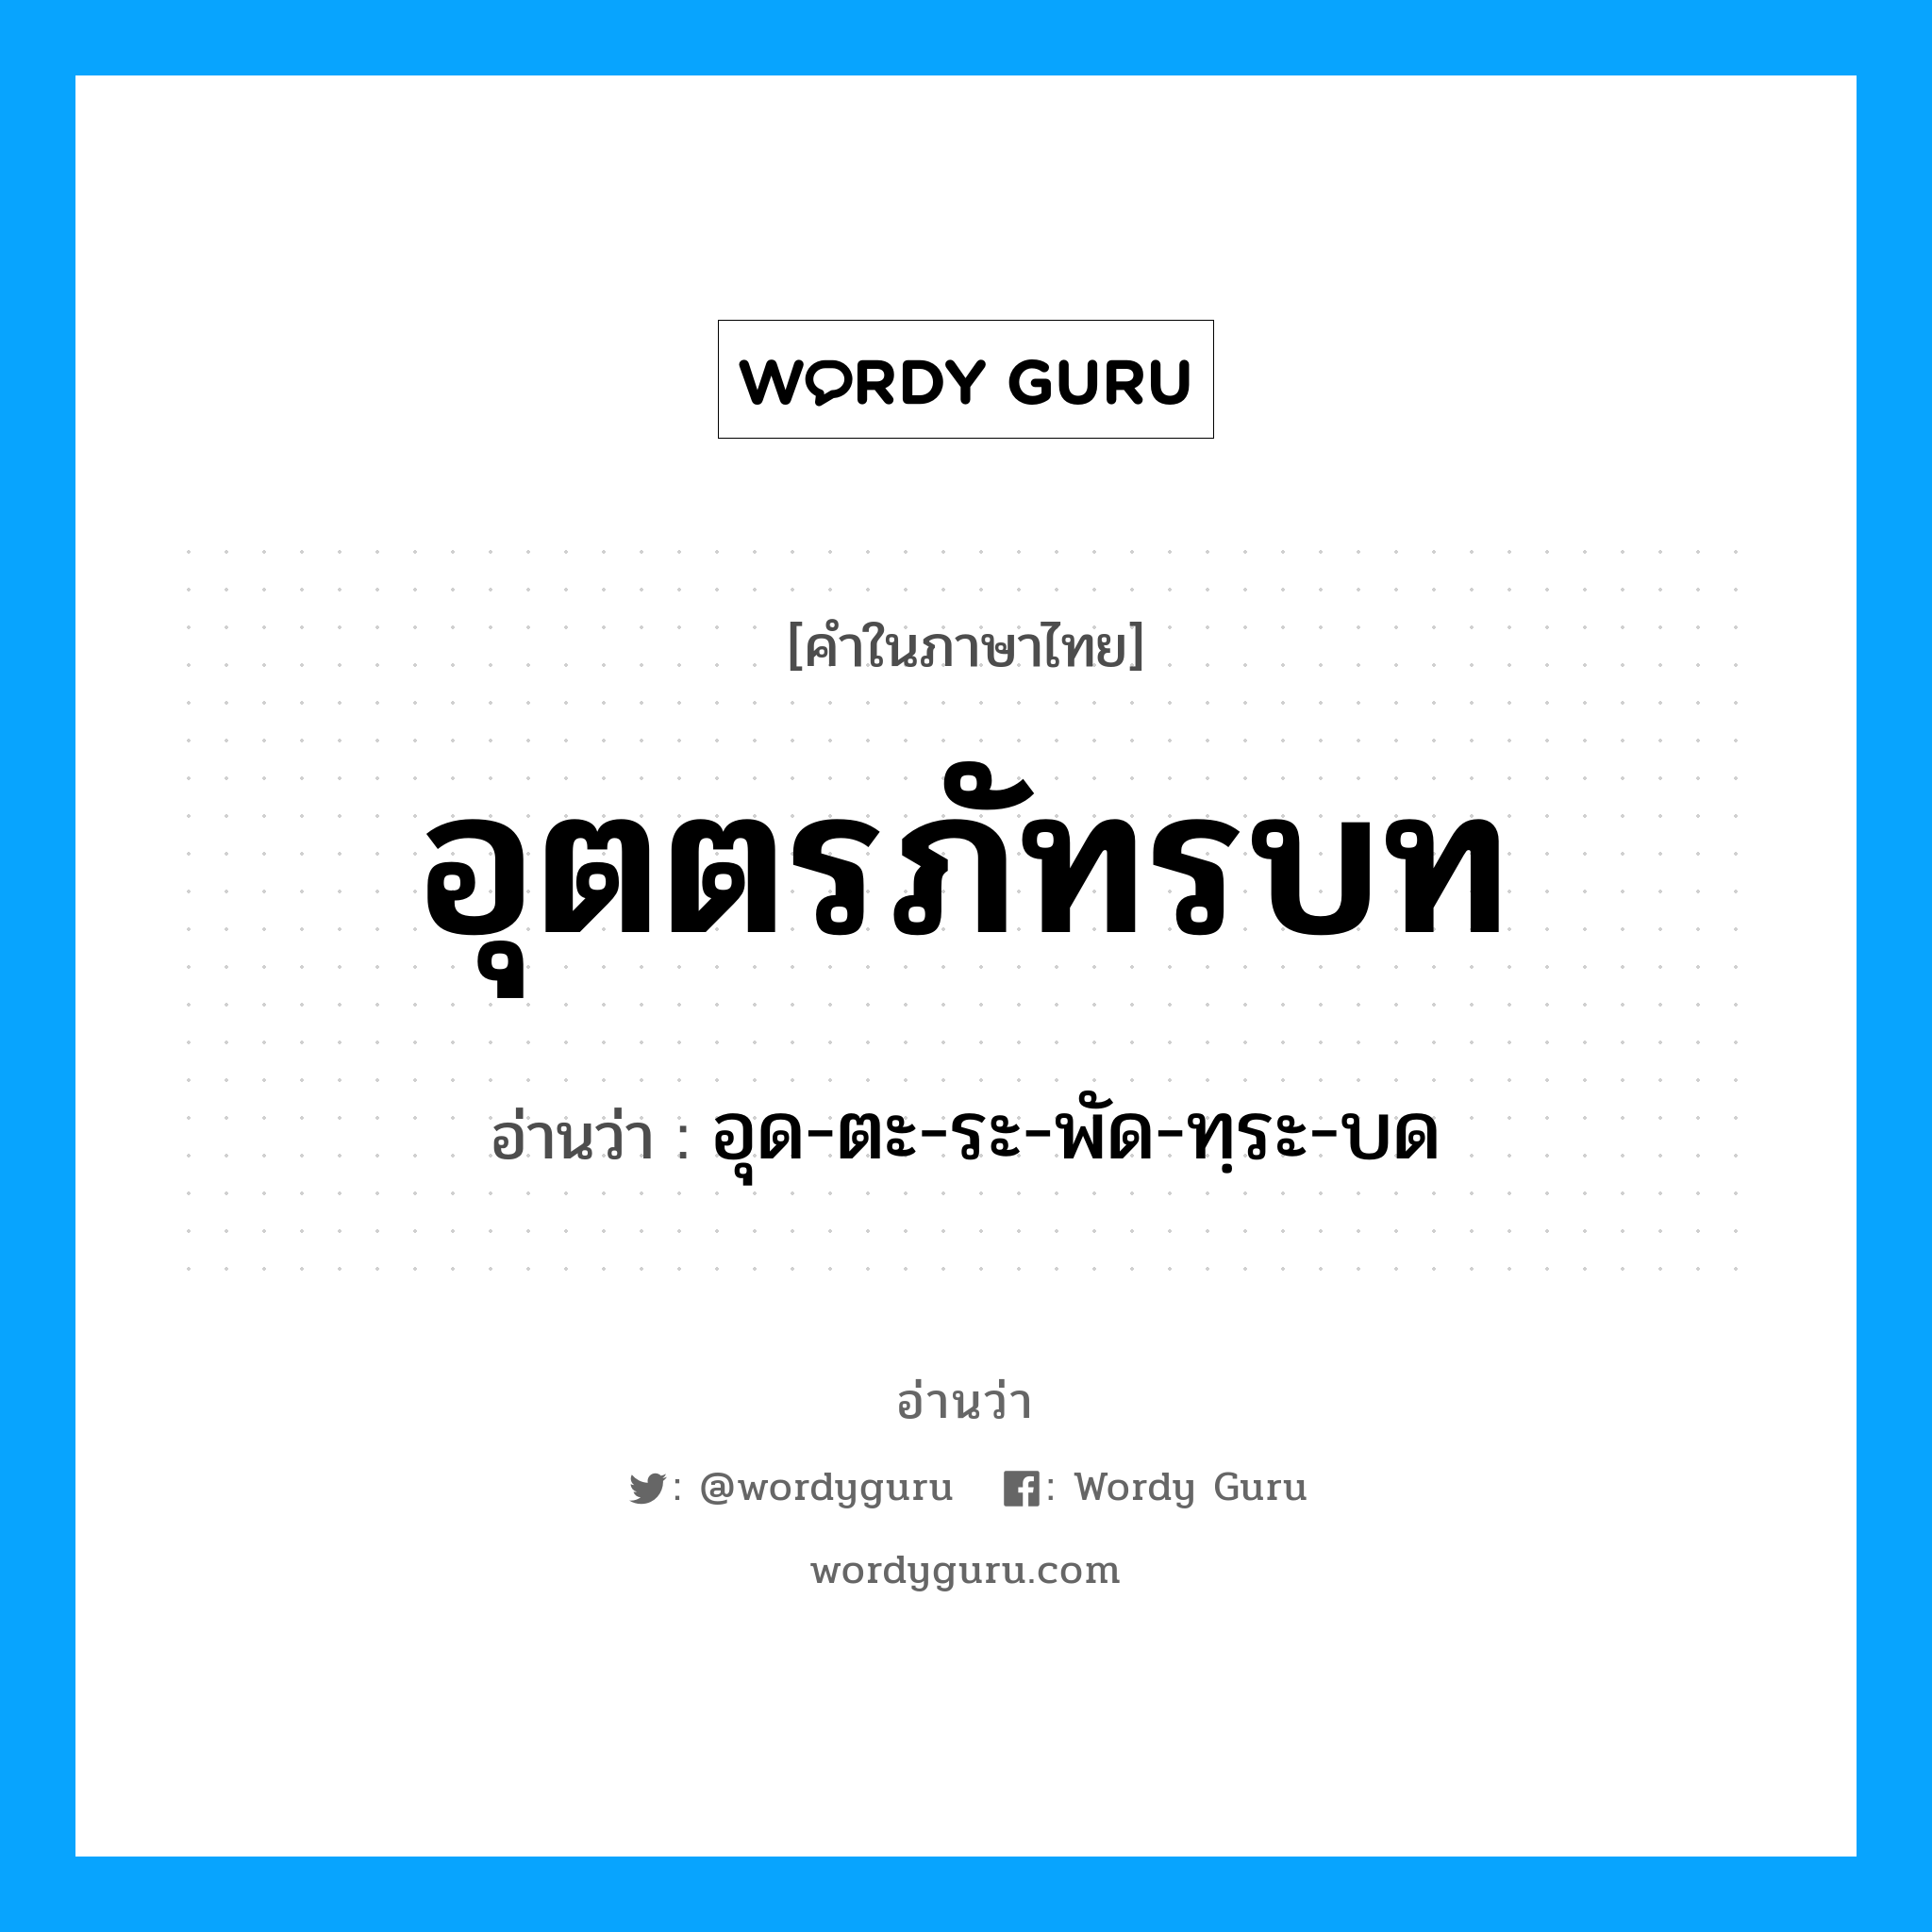 อุด-ตะ-ระ-พัด-ทฺระ-บด เป็นคำอ่านของคำไหน?, คำในภาษาไทย อุด-ตะ-ระ-พัด-ทฺระ-บด อ่านว่า อุตตรภัทรบท